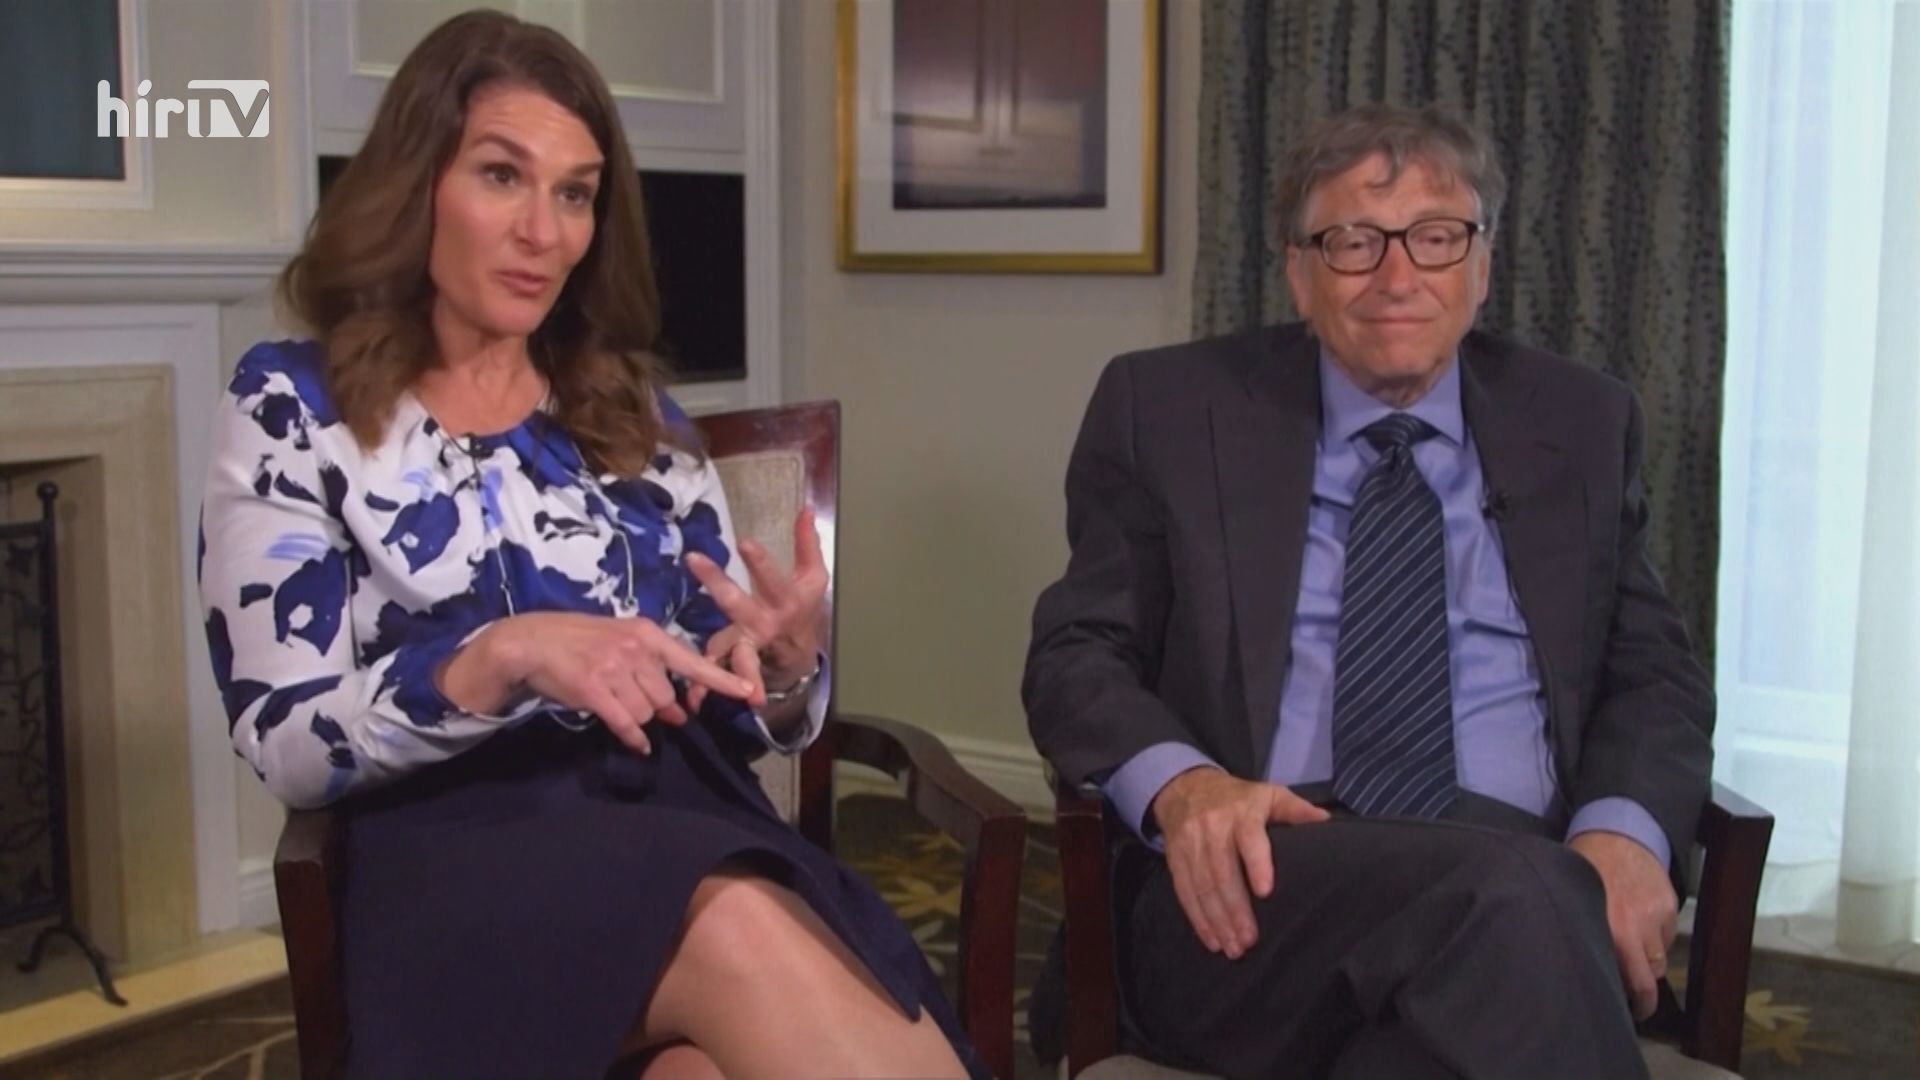 Bill és Melinda Gates bejelentették, hogy elválnak